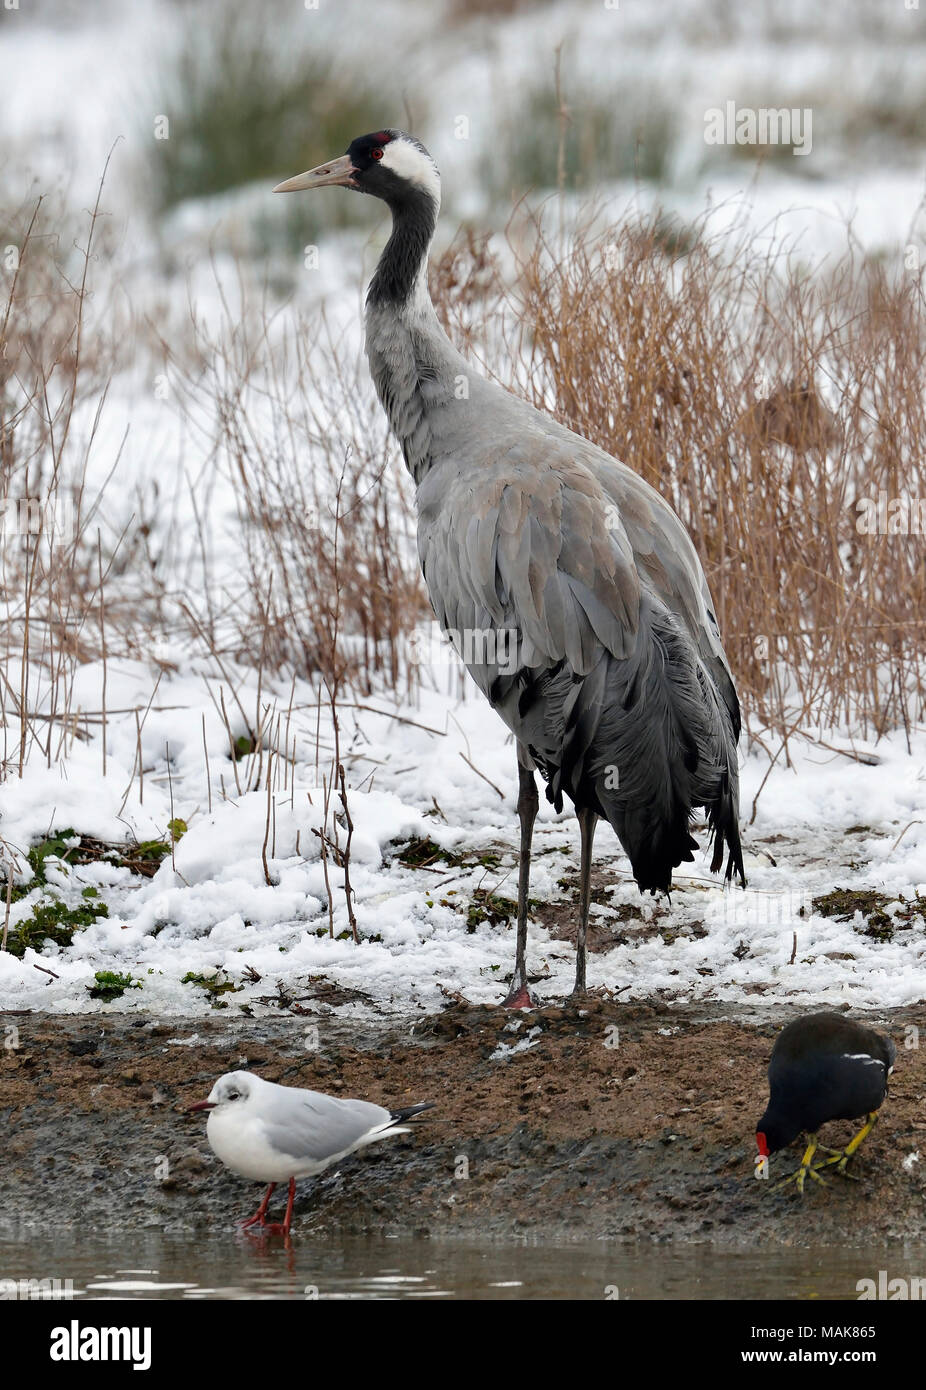 Common Crane - Grus grus In snow Stock Photo